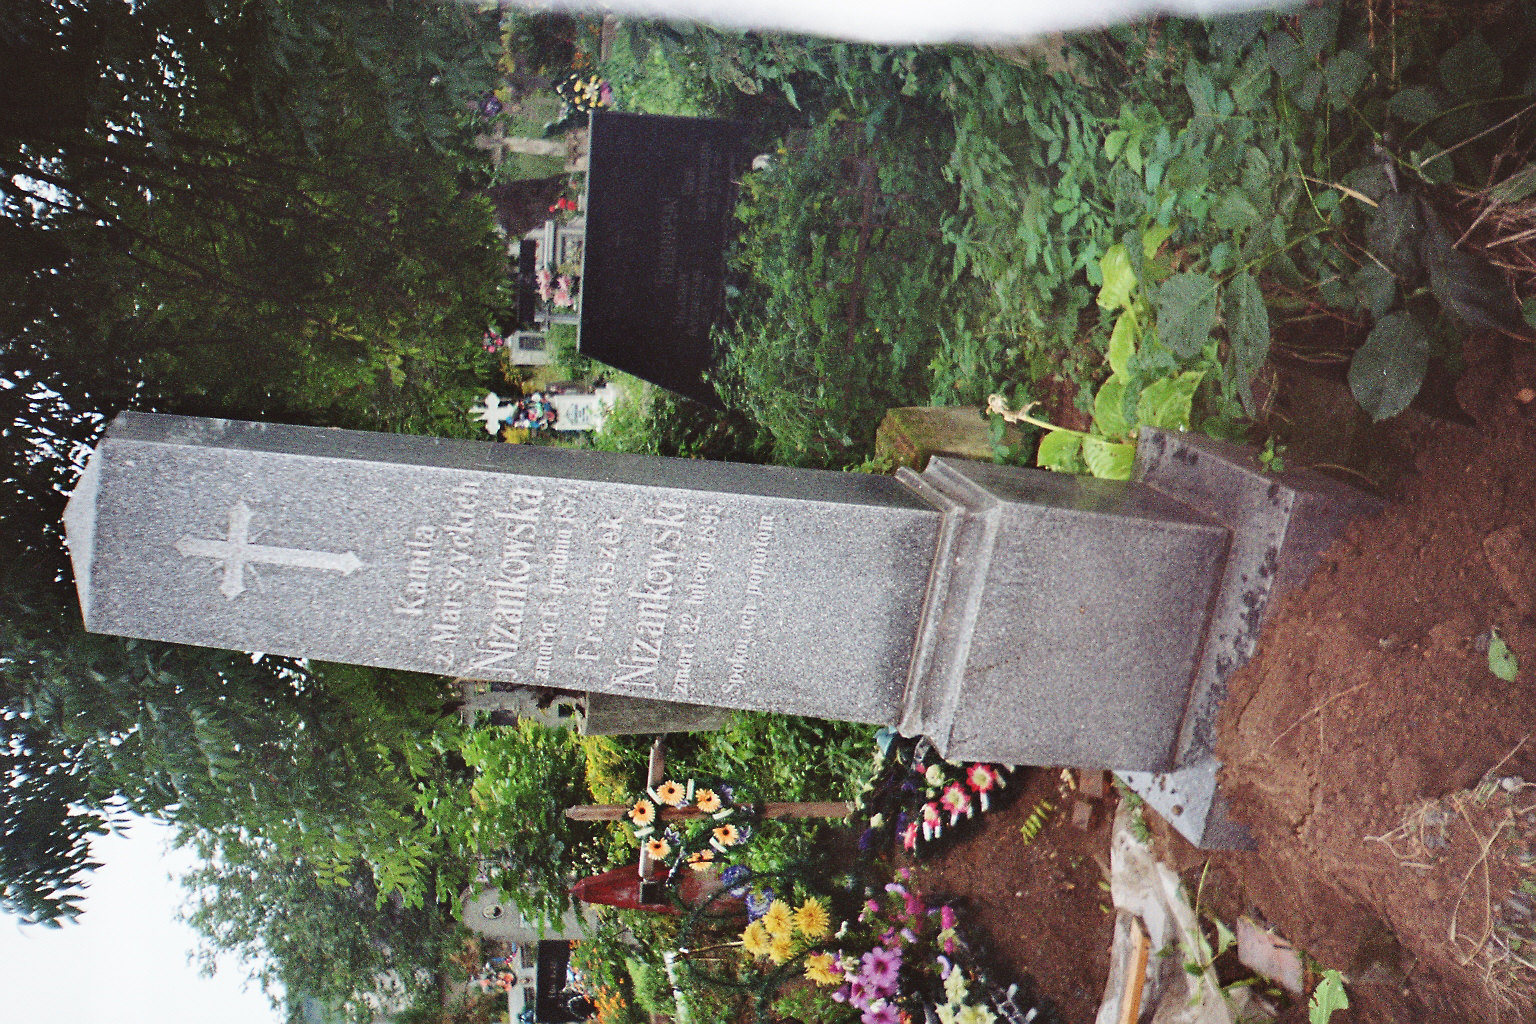 Tombstone of Franciszek and Kamila Nizankowski, Zaleszczyki cemetery, as of 2005.